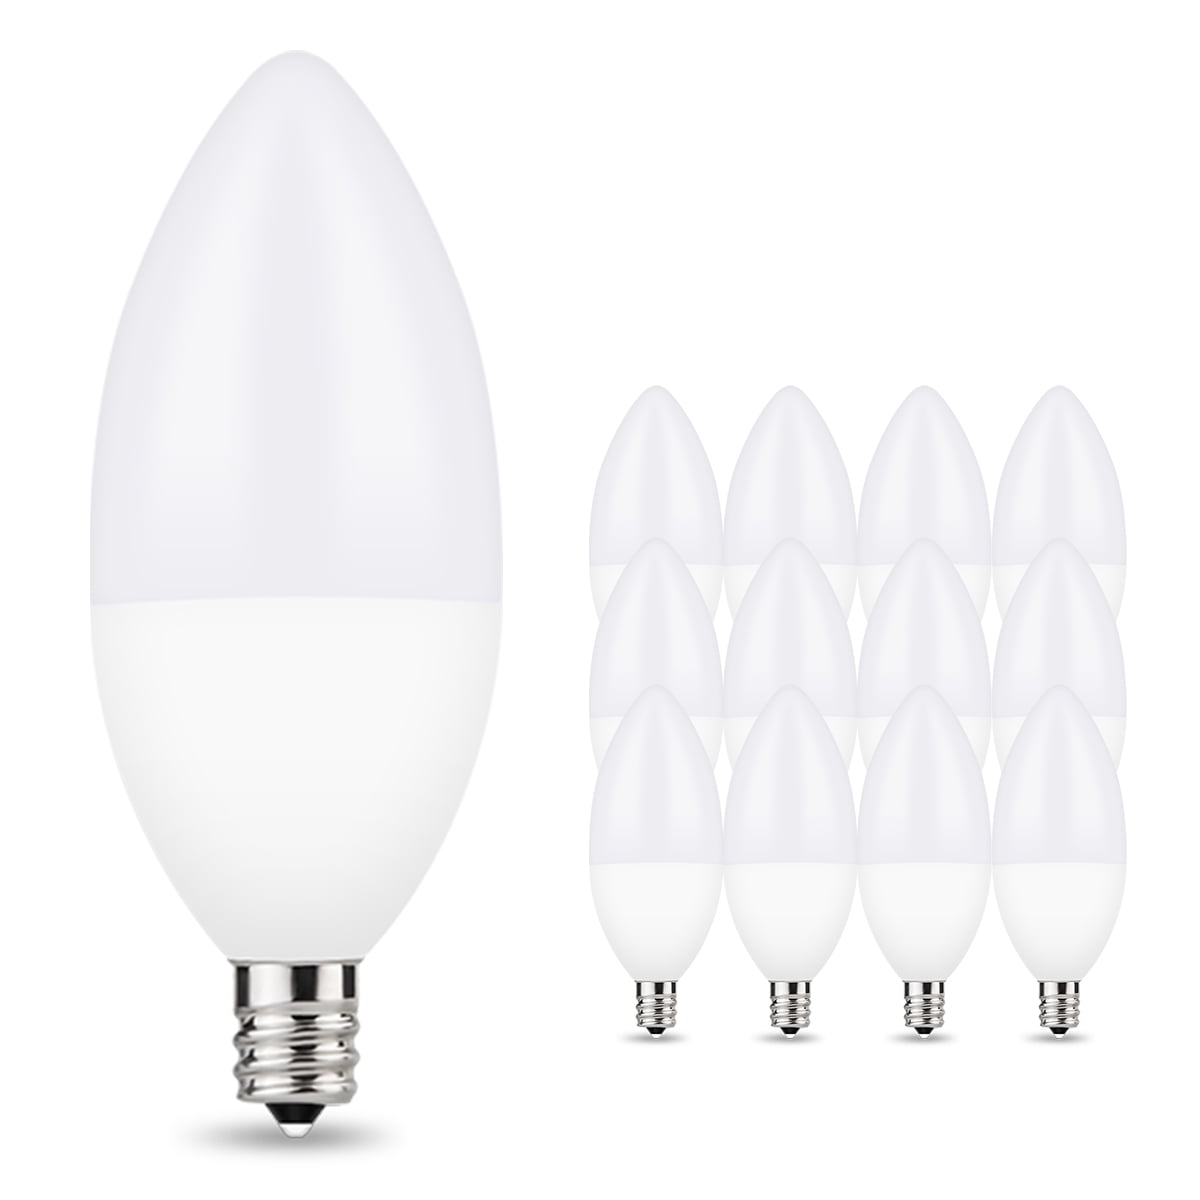 type b light bulb 60 watt led